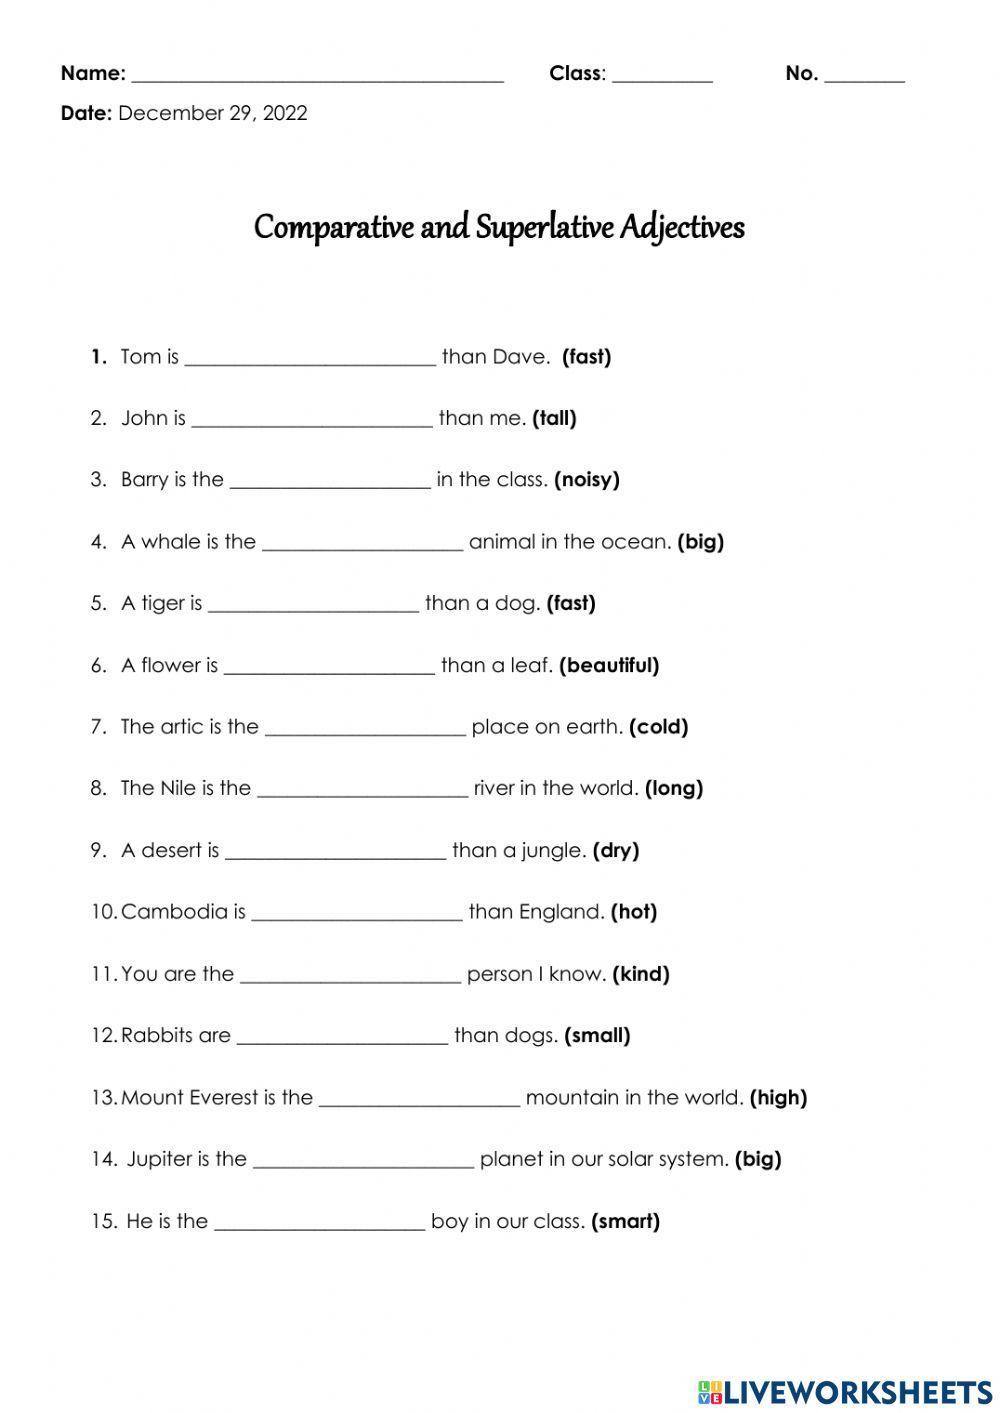 Comparative And Superlative Adjective Worksheet Worksheet Live Worksheets